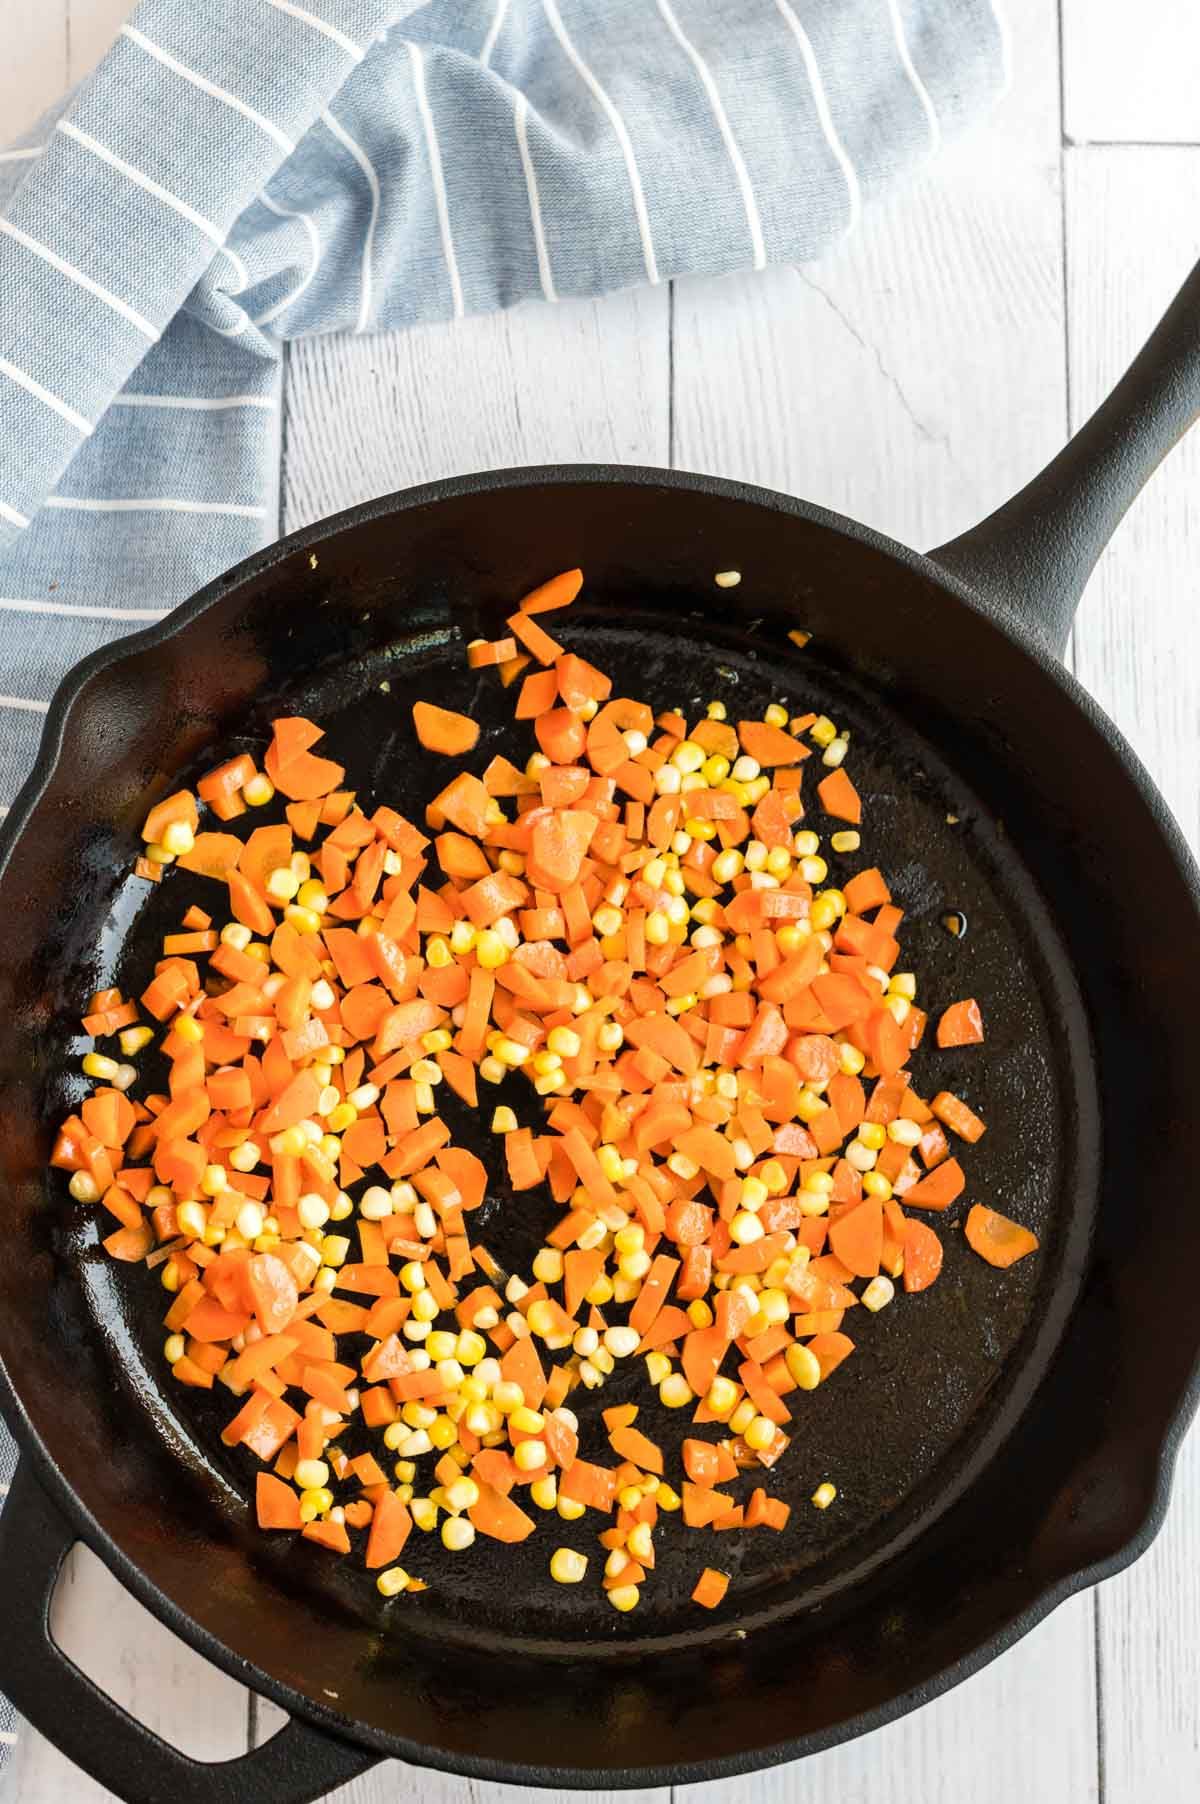 Zanahorias picadas y maíz en una sartén de hierro fundido